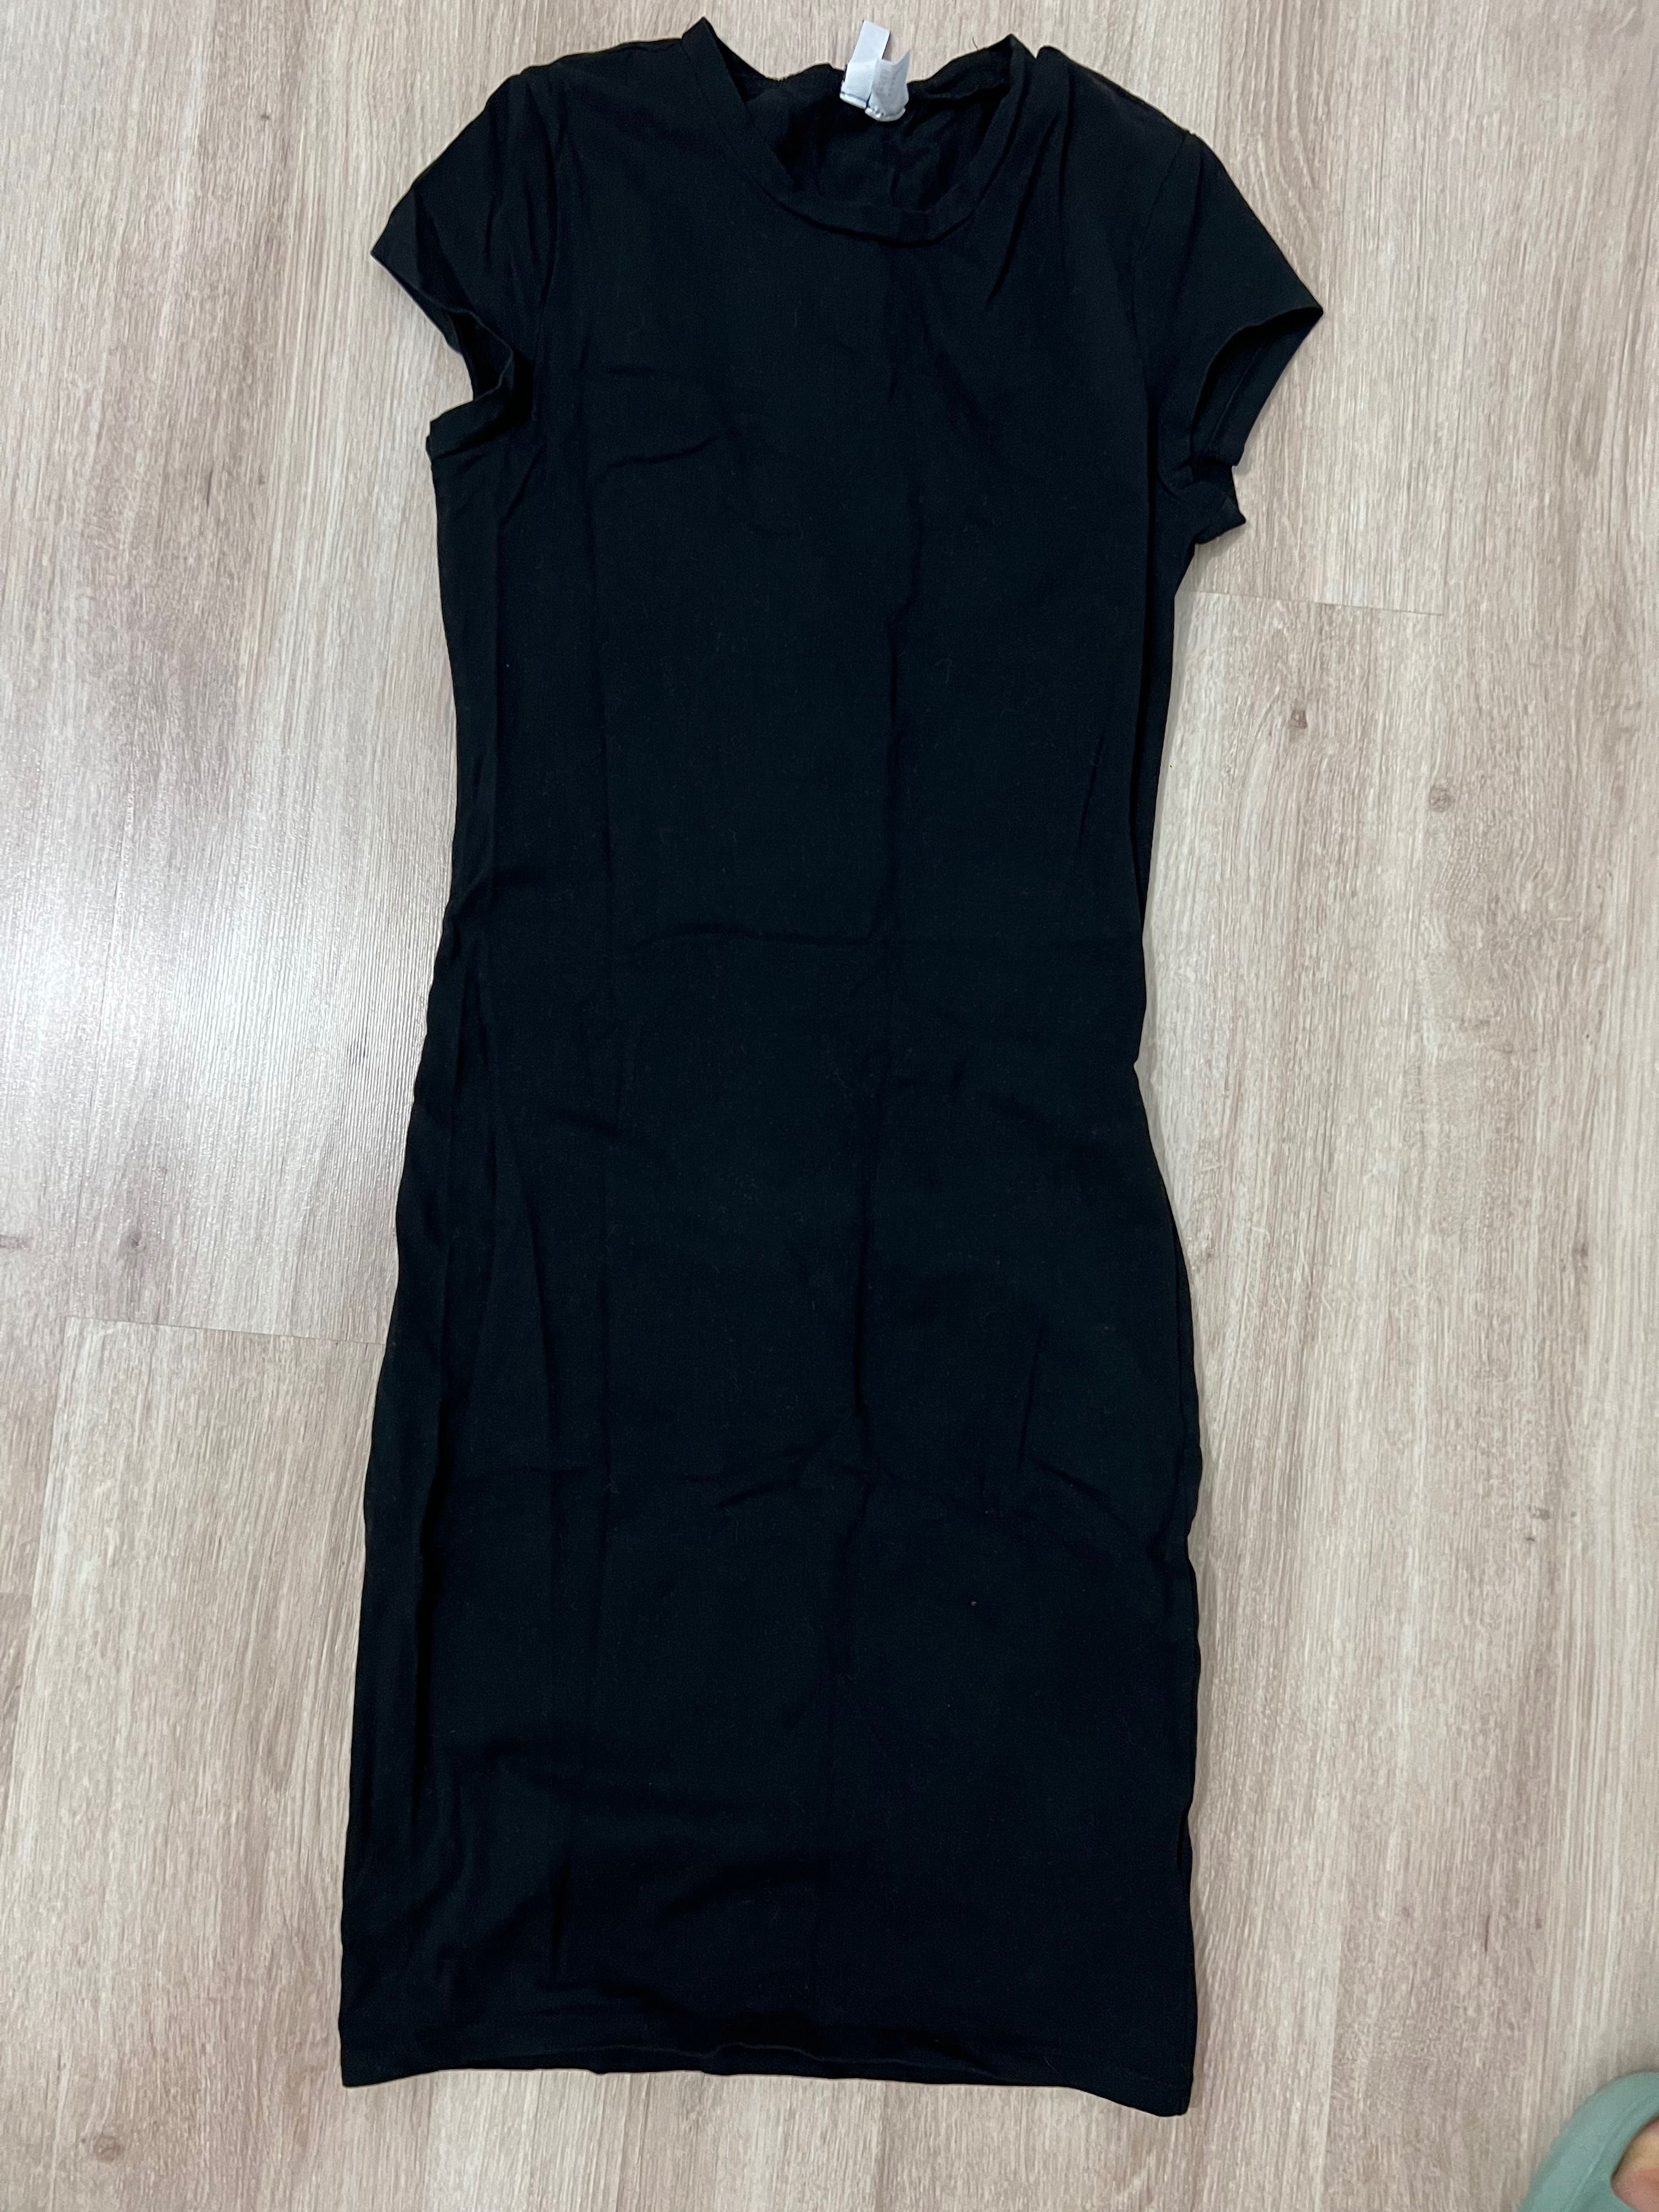 Черное базовое трикотажное платье от HM размер М